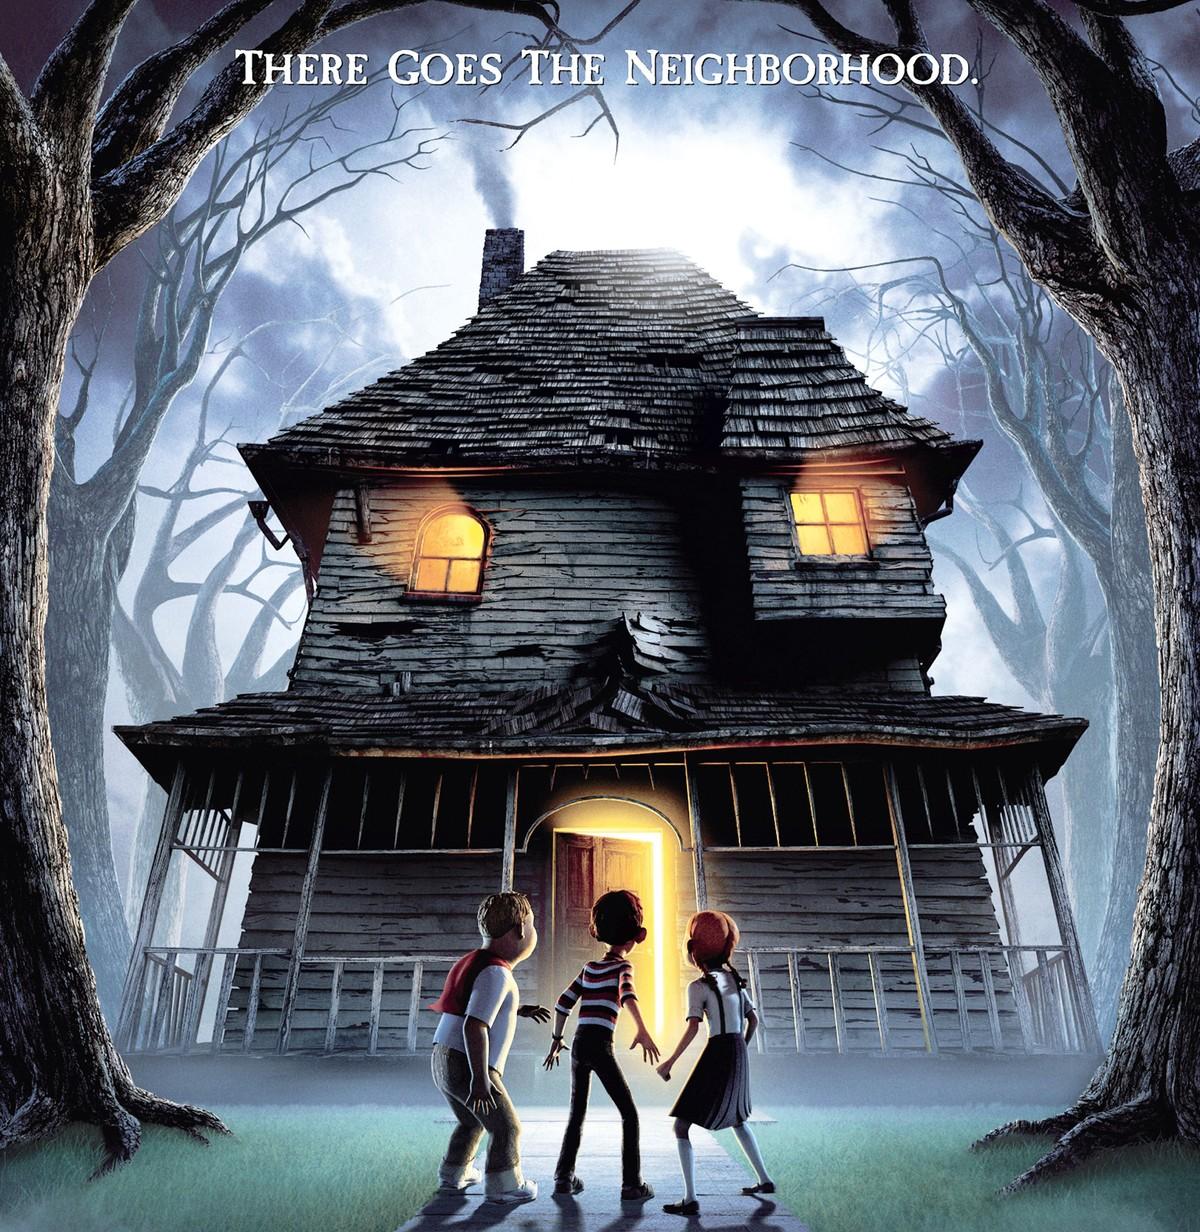 Affiche sur laquelle on voit une maison sombre dans une forêt, trois enfants sont devant la porte, de la lumière en sort ainsi que des fenêtres.